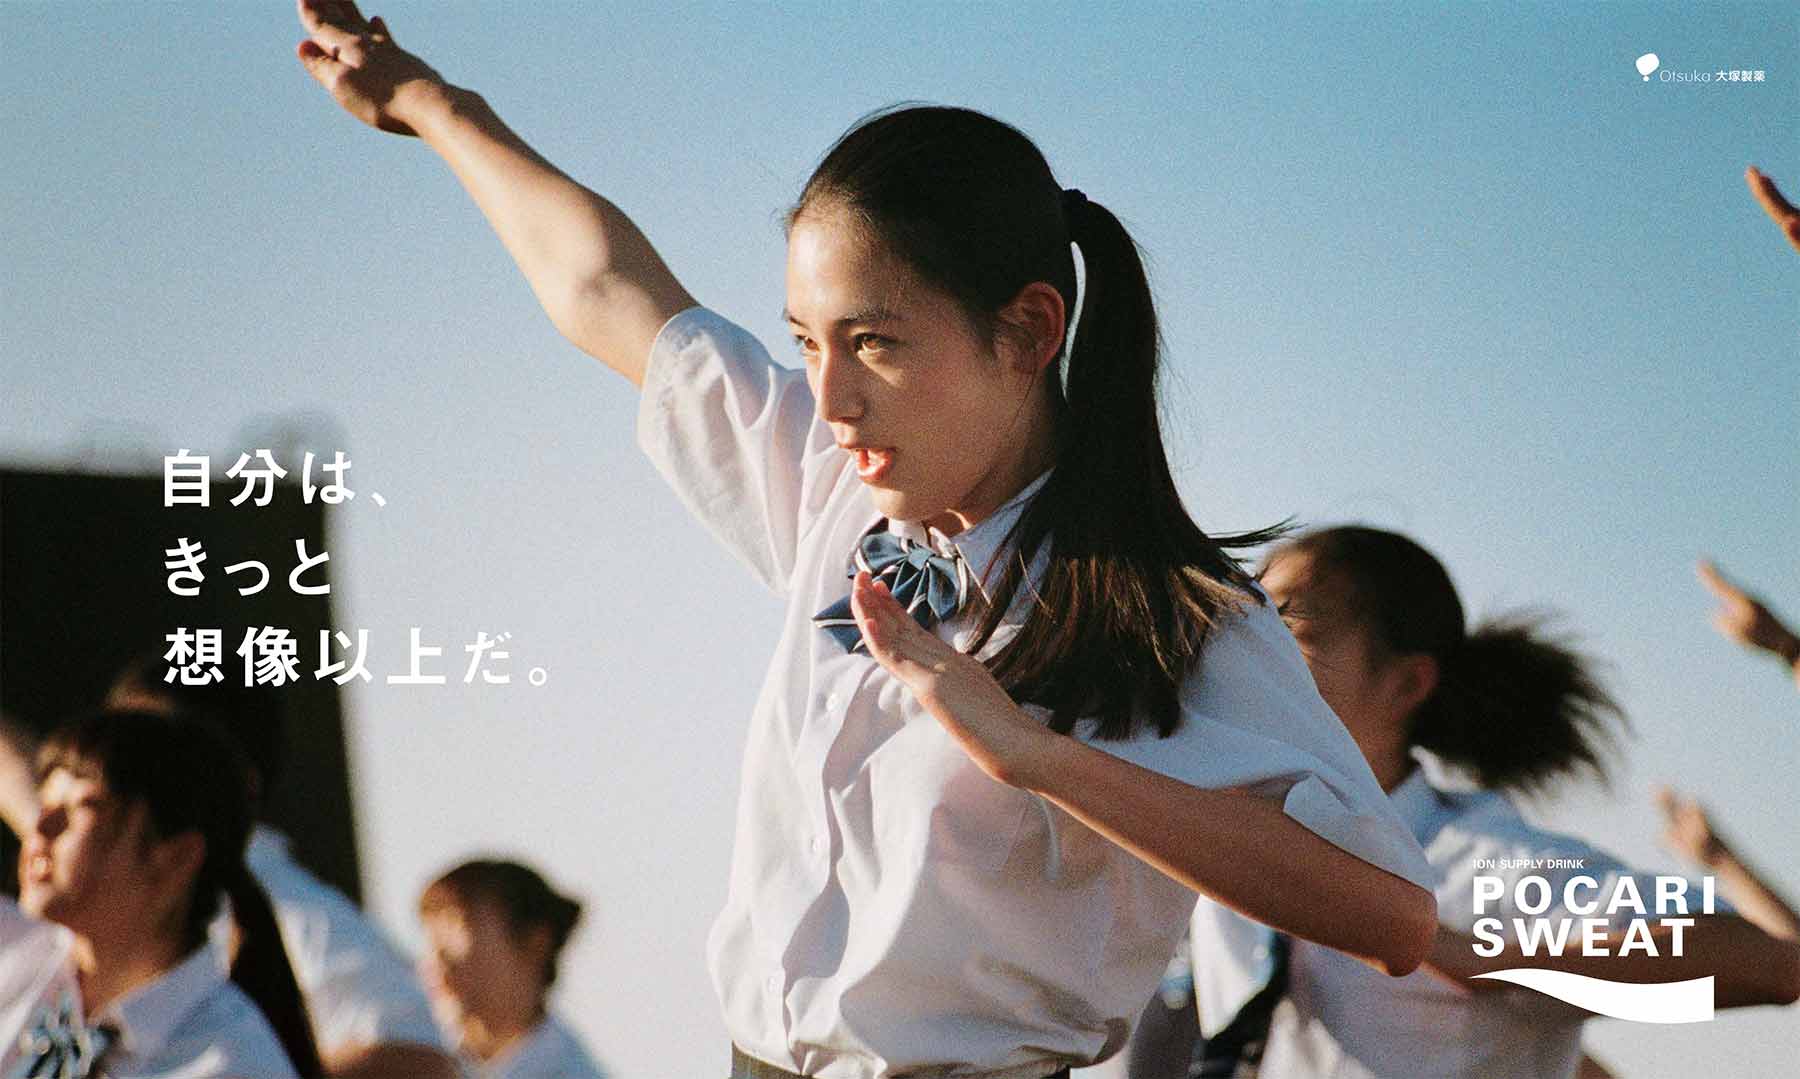 大塚製薬 ポカリスエット 2017「踊る修学旅行」篇